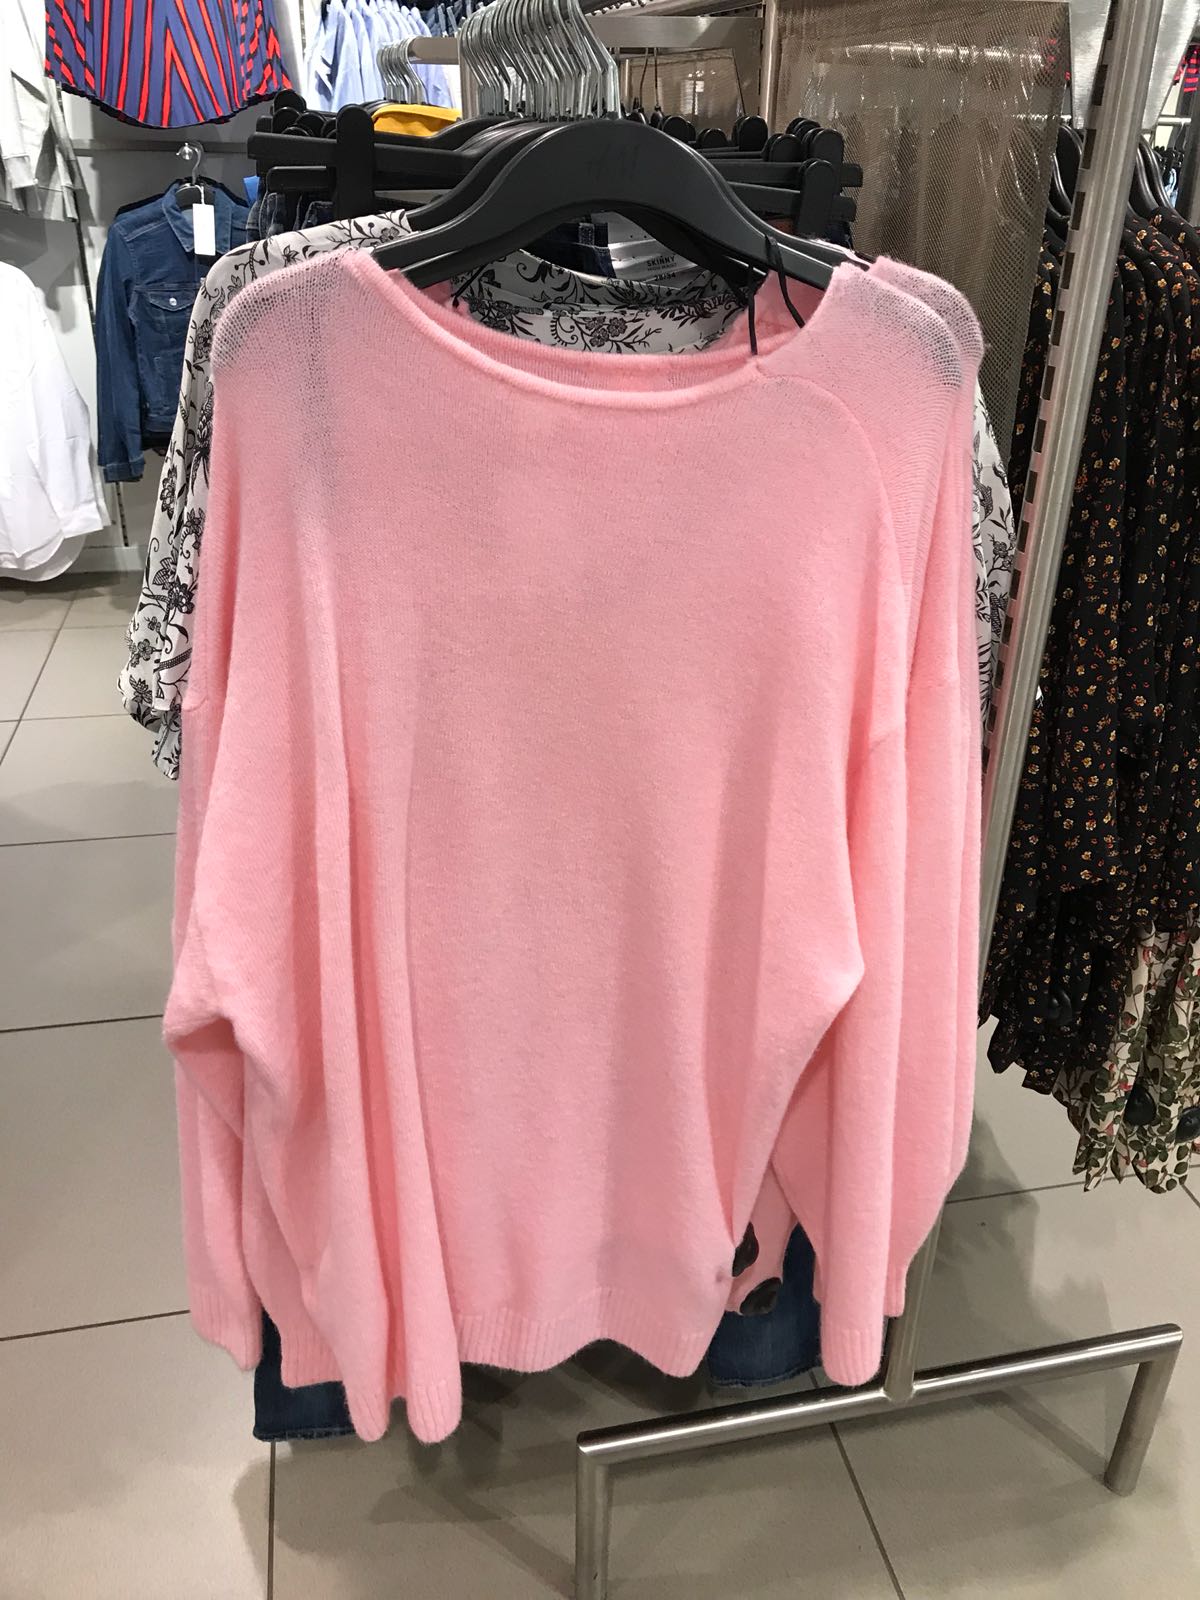 El rosa pastel, color tendencia de la primavera 2018